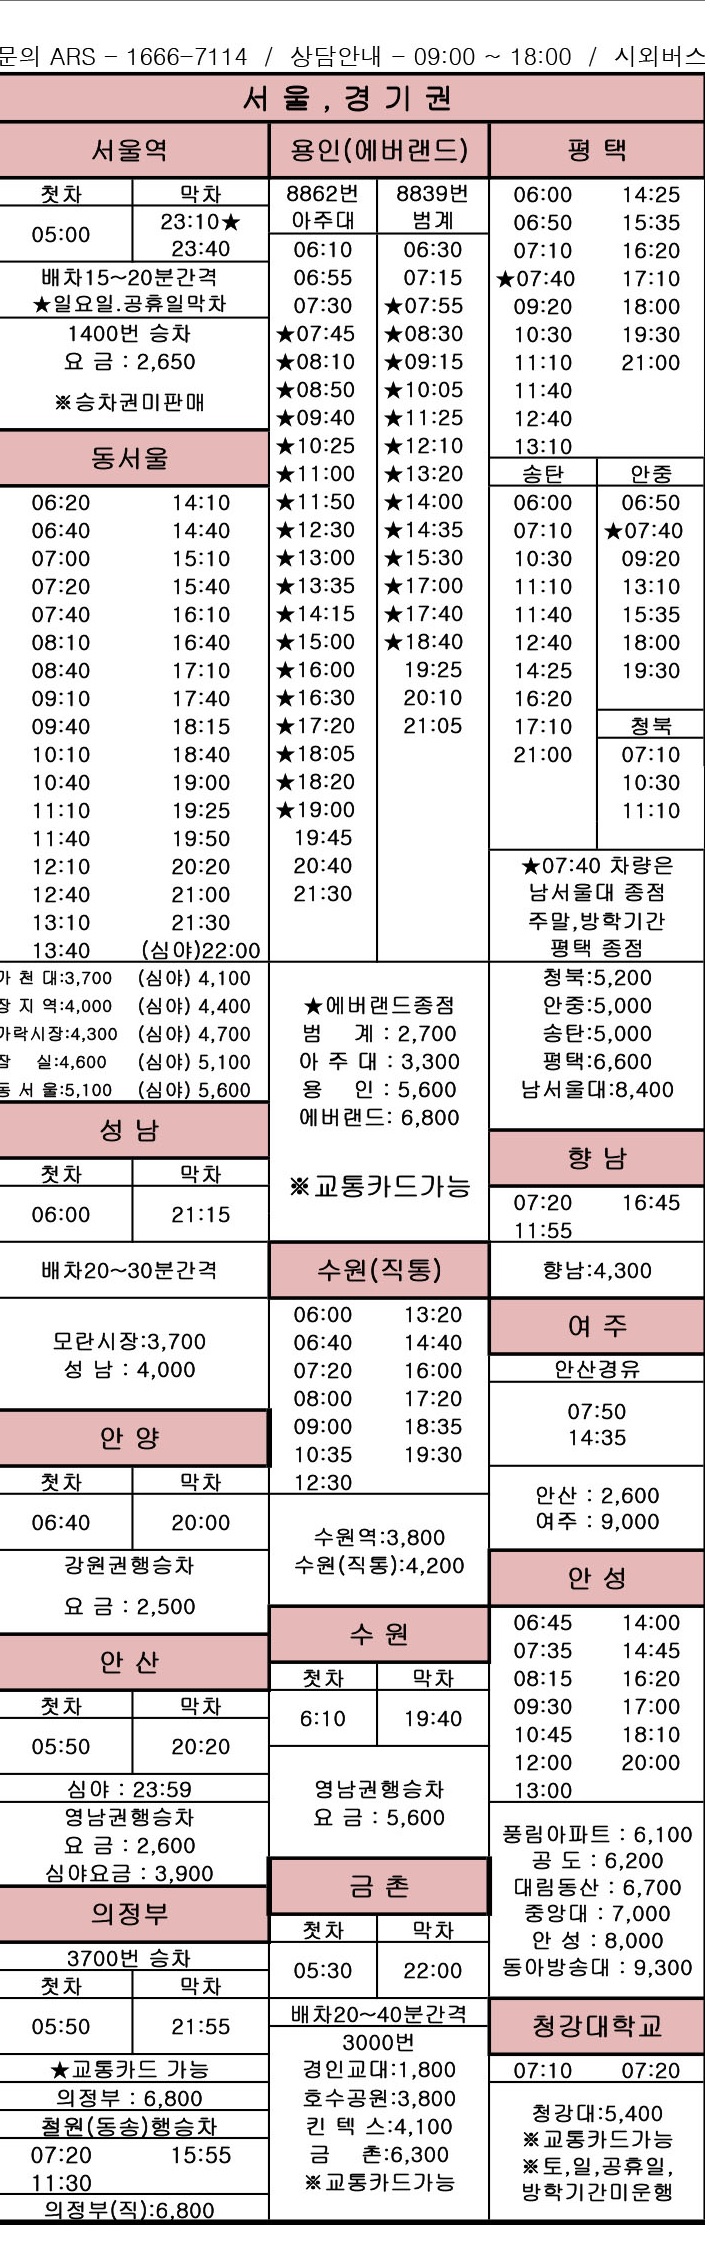 인천 종합버스터미널 시간표 <20.1.7ver>